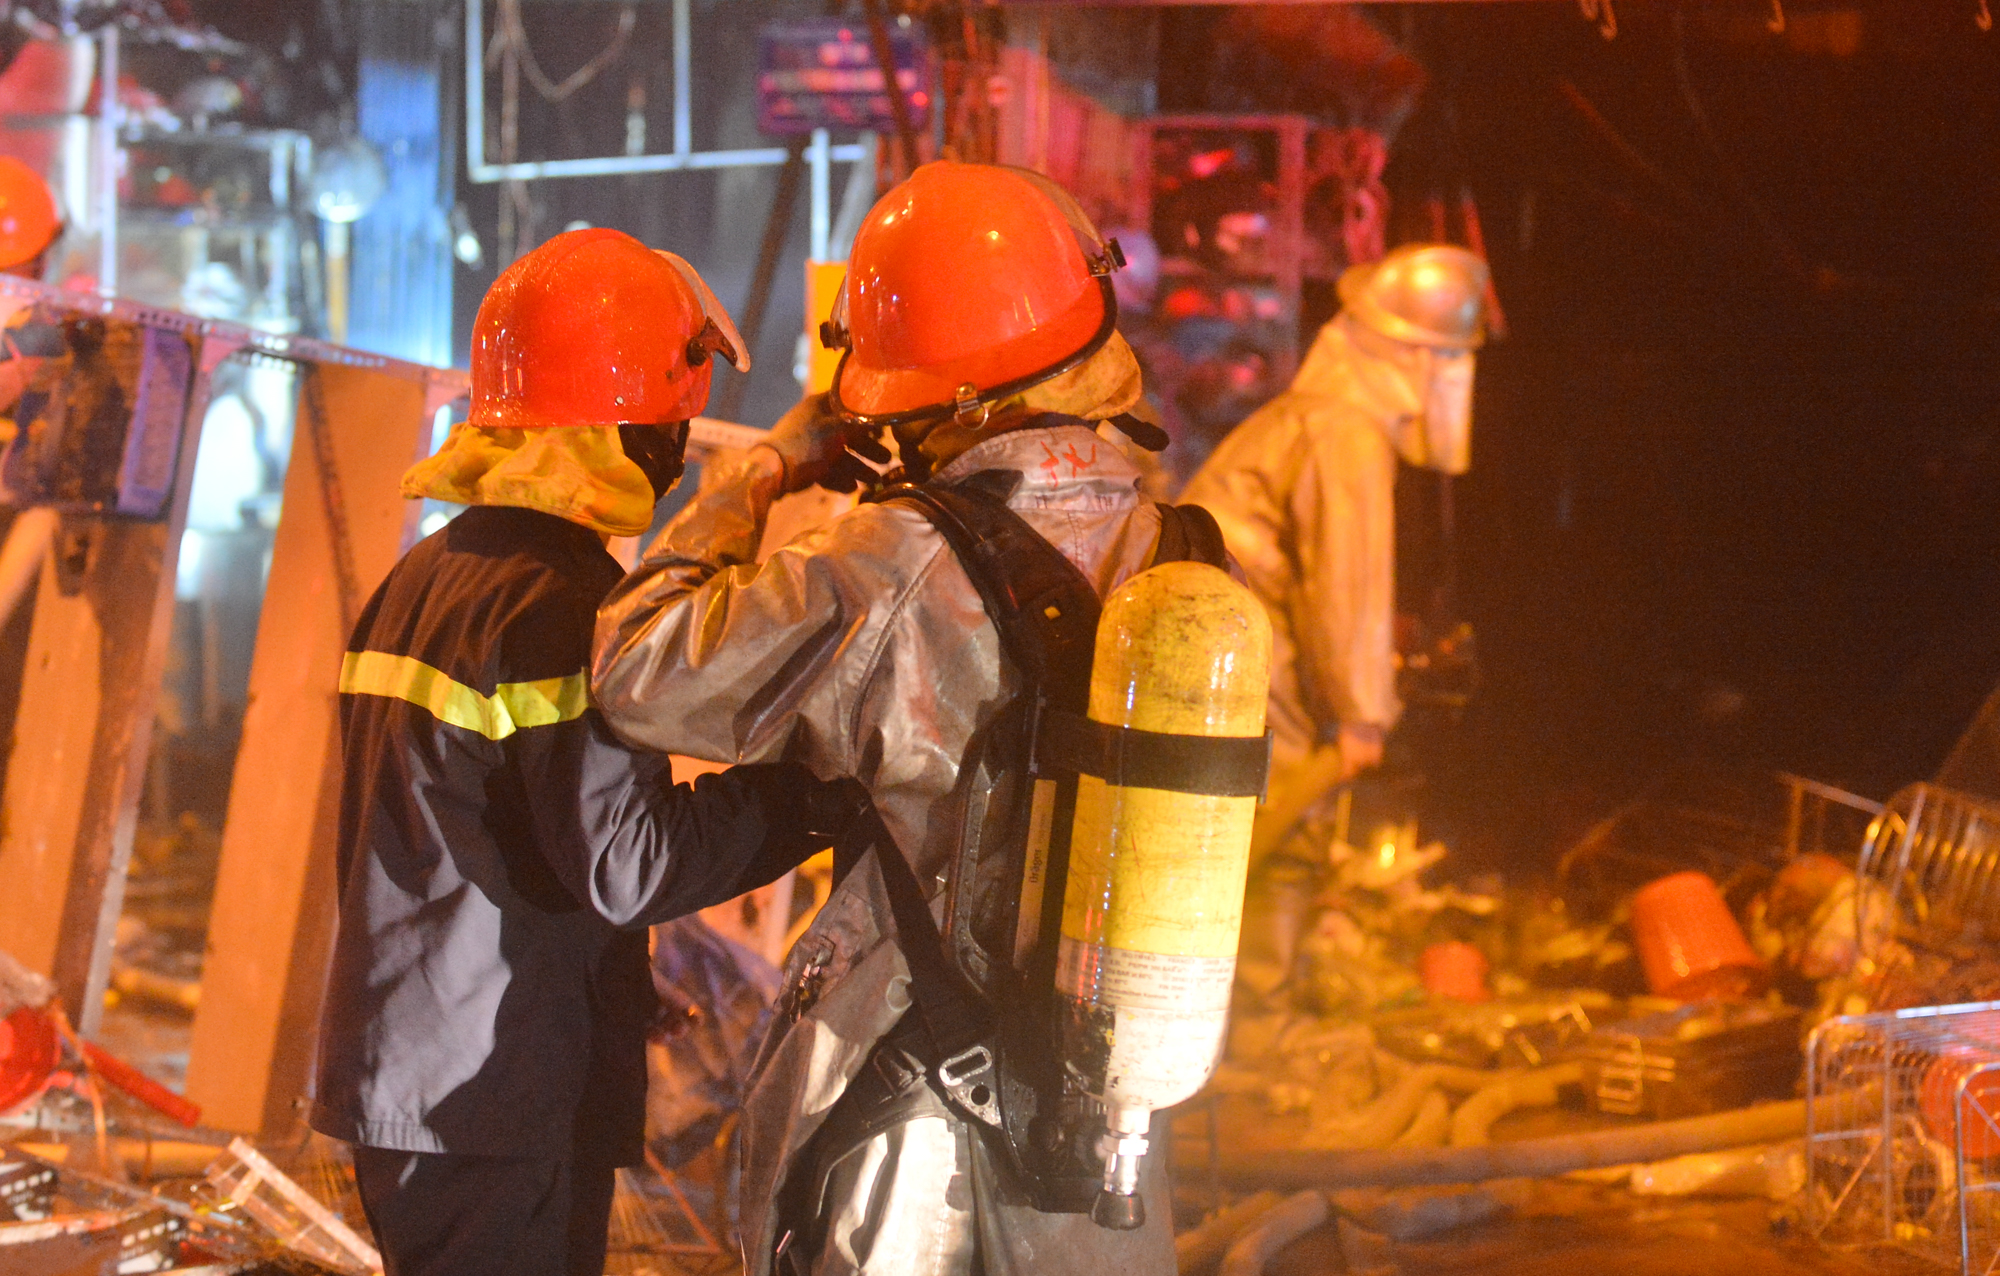 Ảnh, clip: Hiện trường vụ cháy 3 kiot ở Hà Nội trong đêm, nhiều người thoát nạn - Ảnh 10.